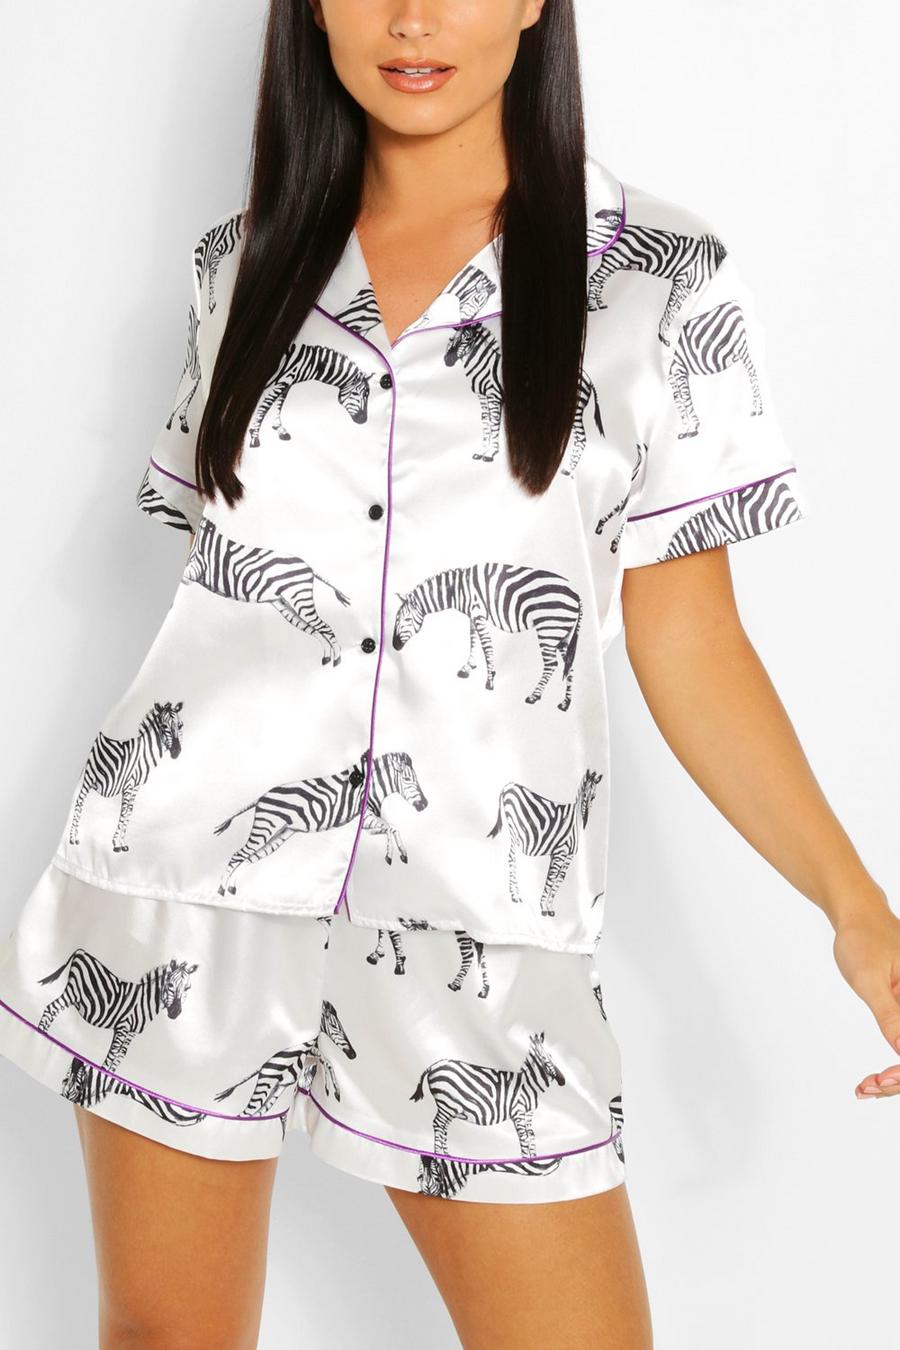 Set pigiama corto in raso con stampa zebrata, Bianco